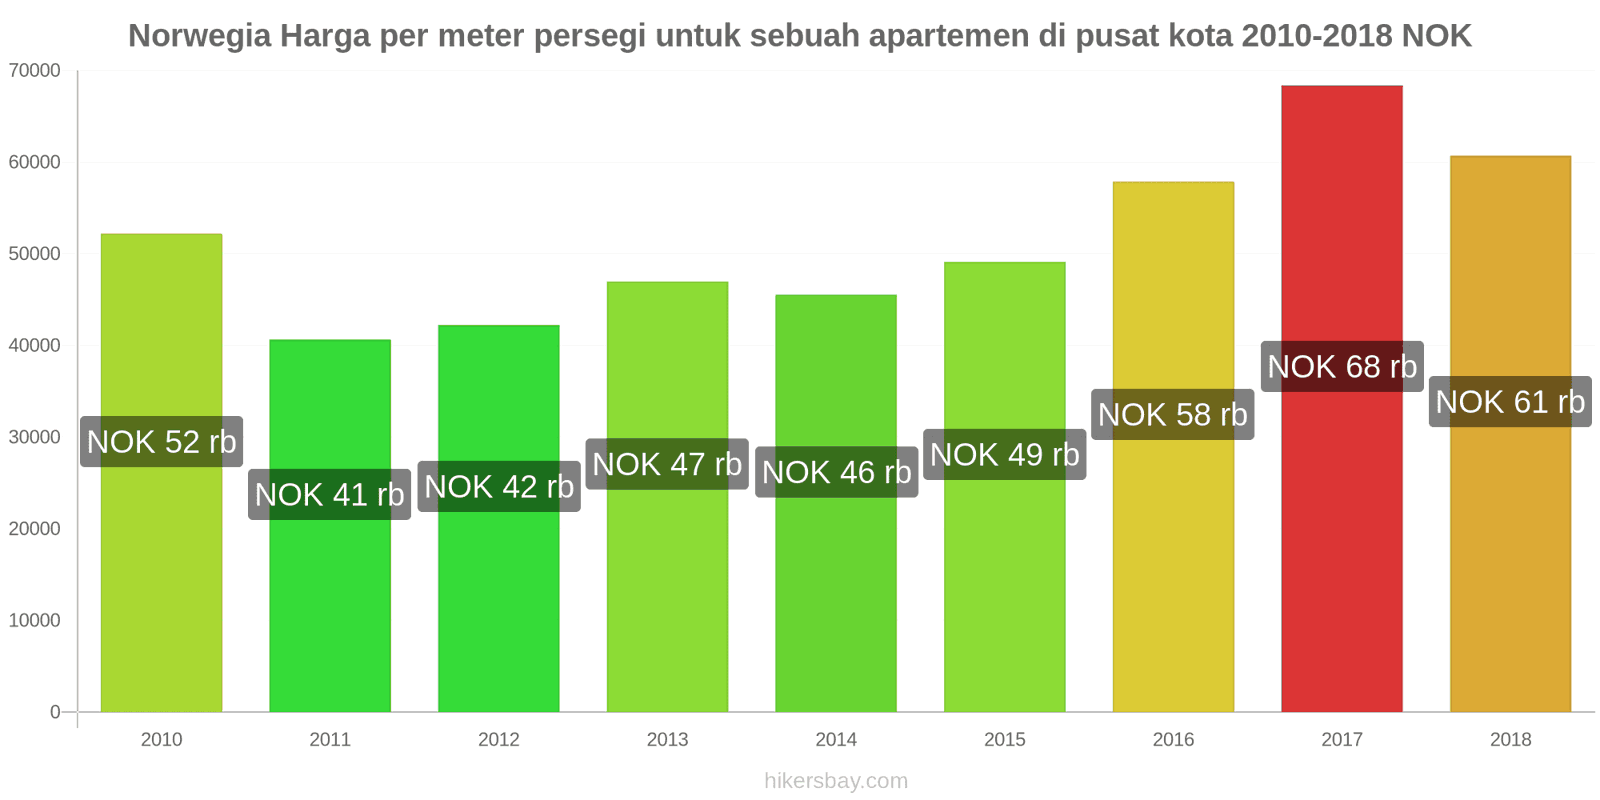 Norwegia perubahan harga Harga per meter persegi untuk apartemen di pusat kota hikersbay.com